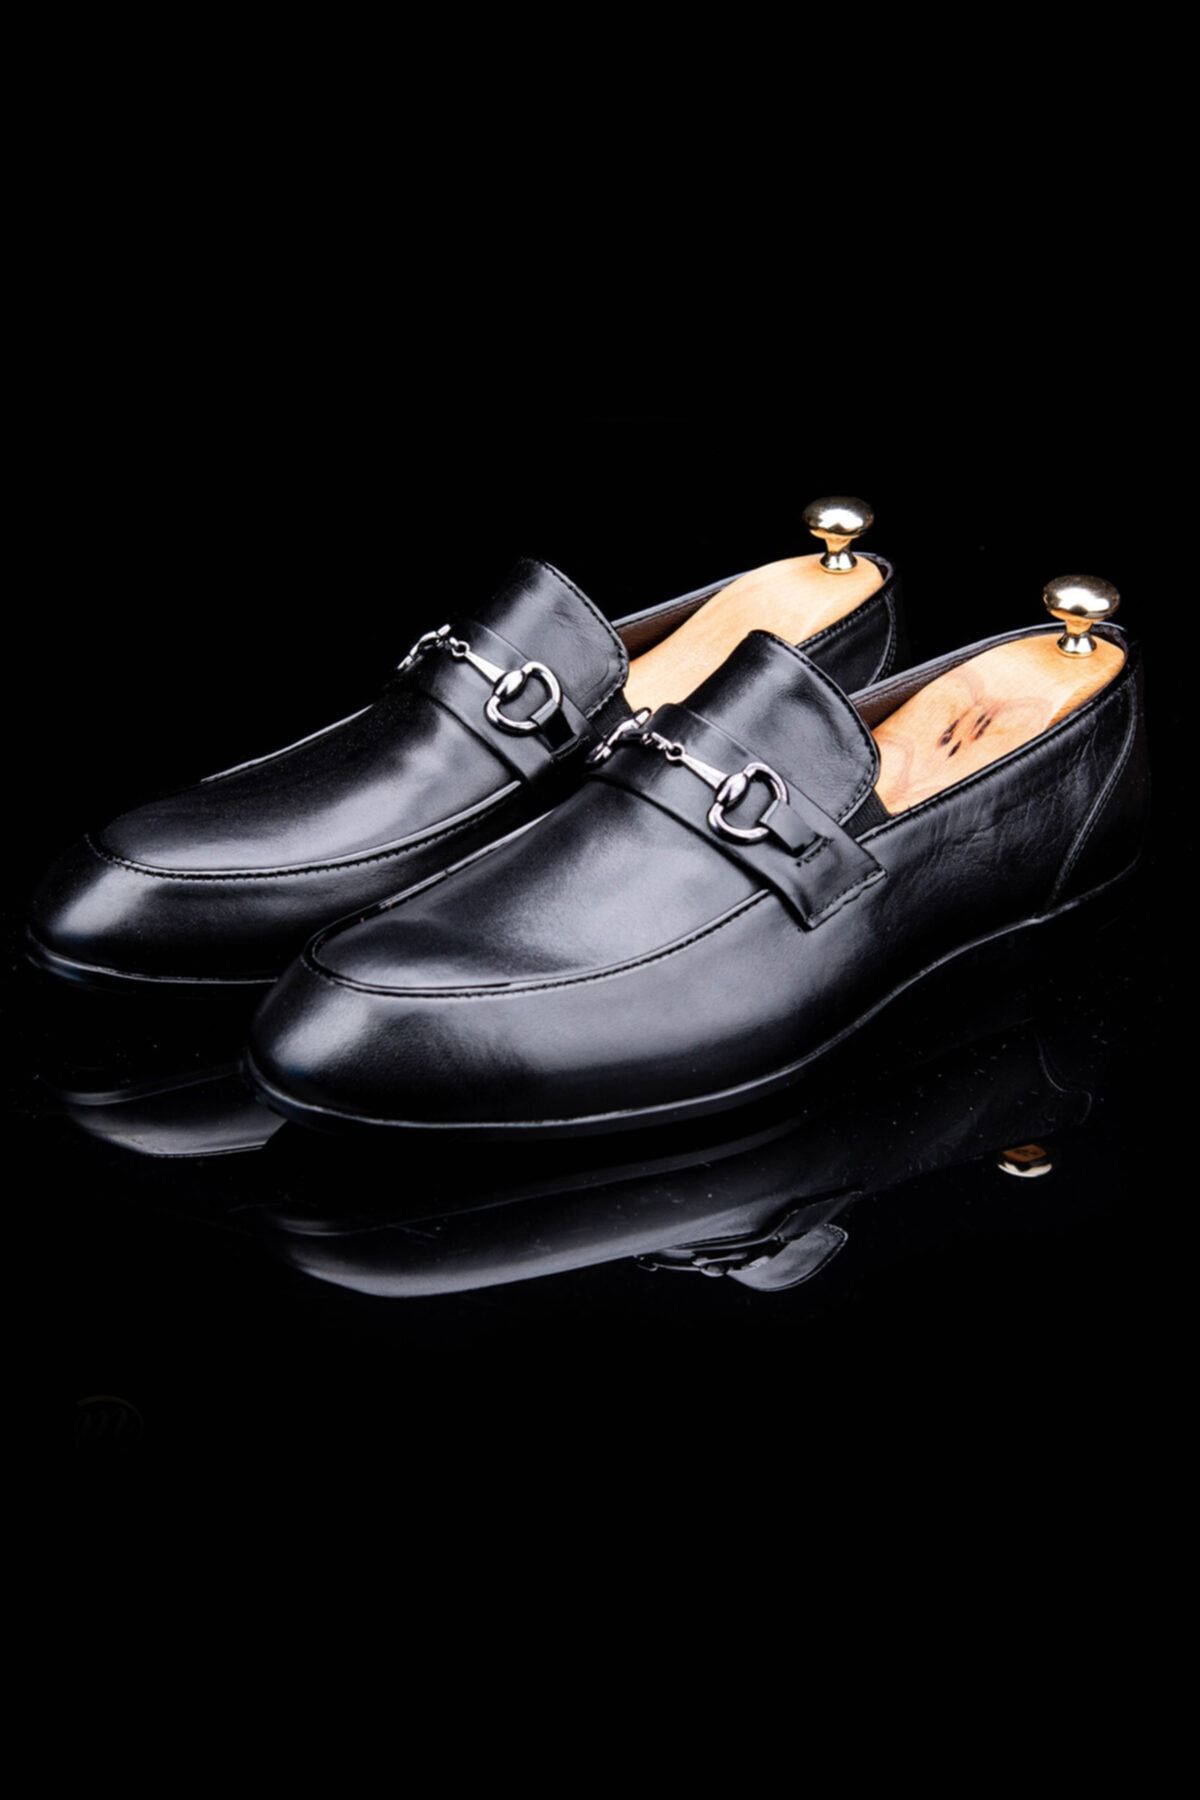 DeepSea Paolo Massi Siyah Aksesuarlı Deri Ayakkabı 2001817